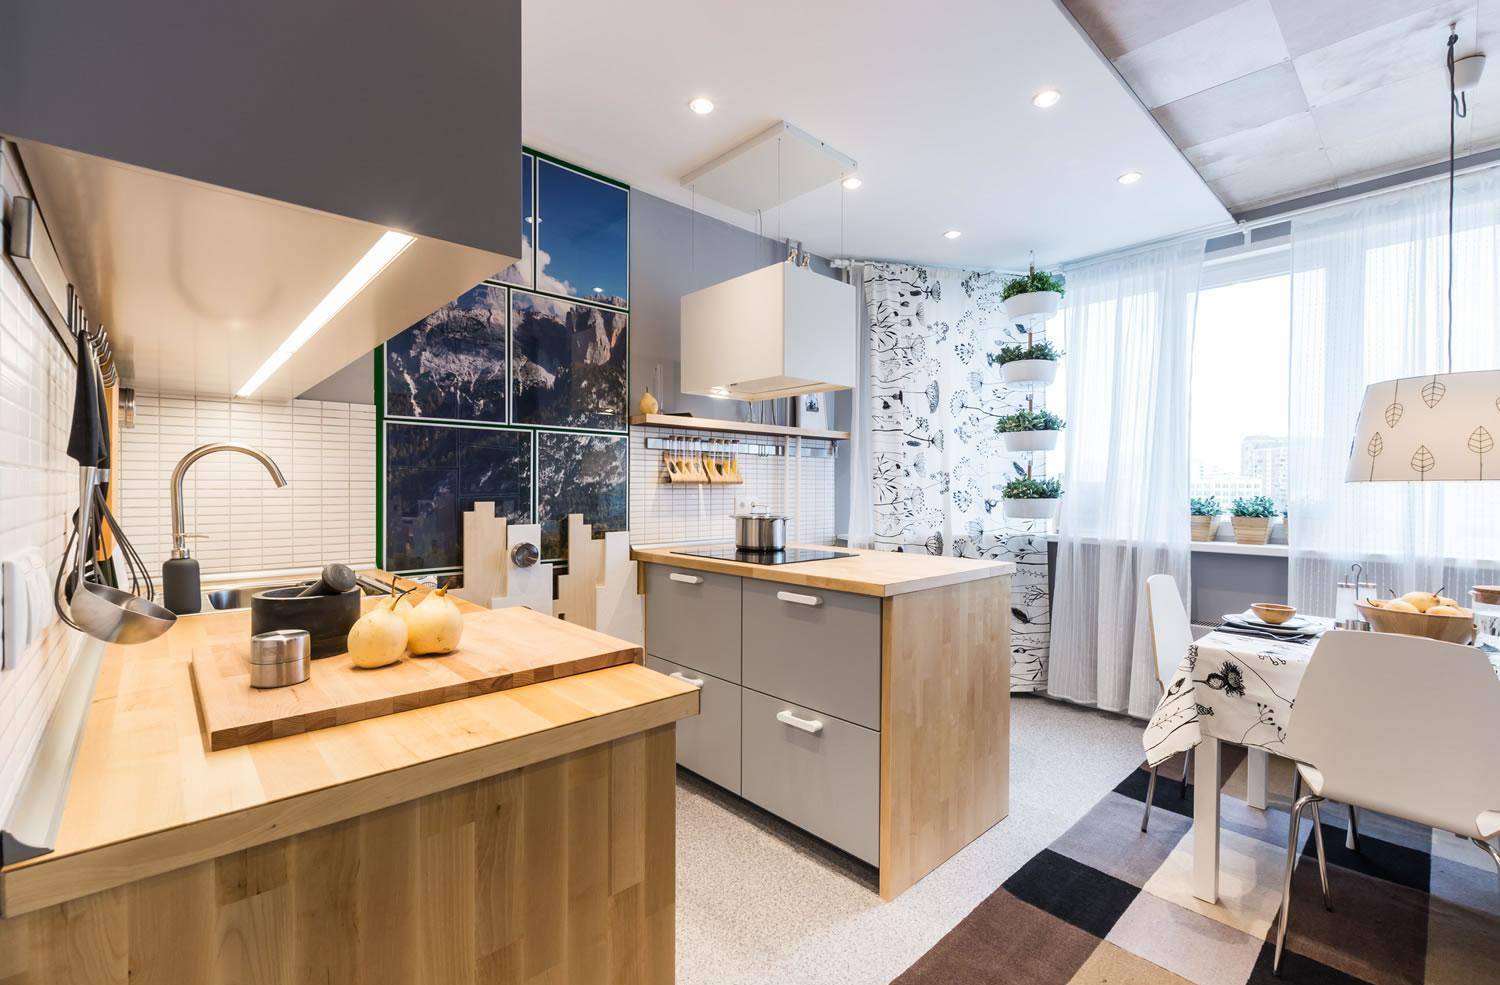 Кухня 14 кв. м. — обзор лучших идей по планировке стильного дизайна. кухня 14 кв. м. – планировка и индивидуальный стиль.